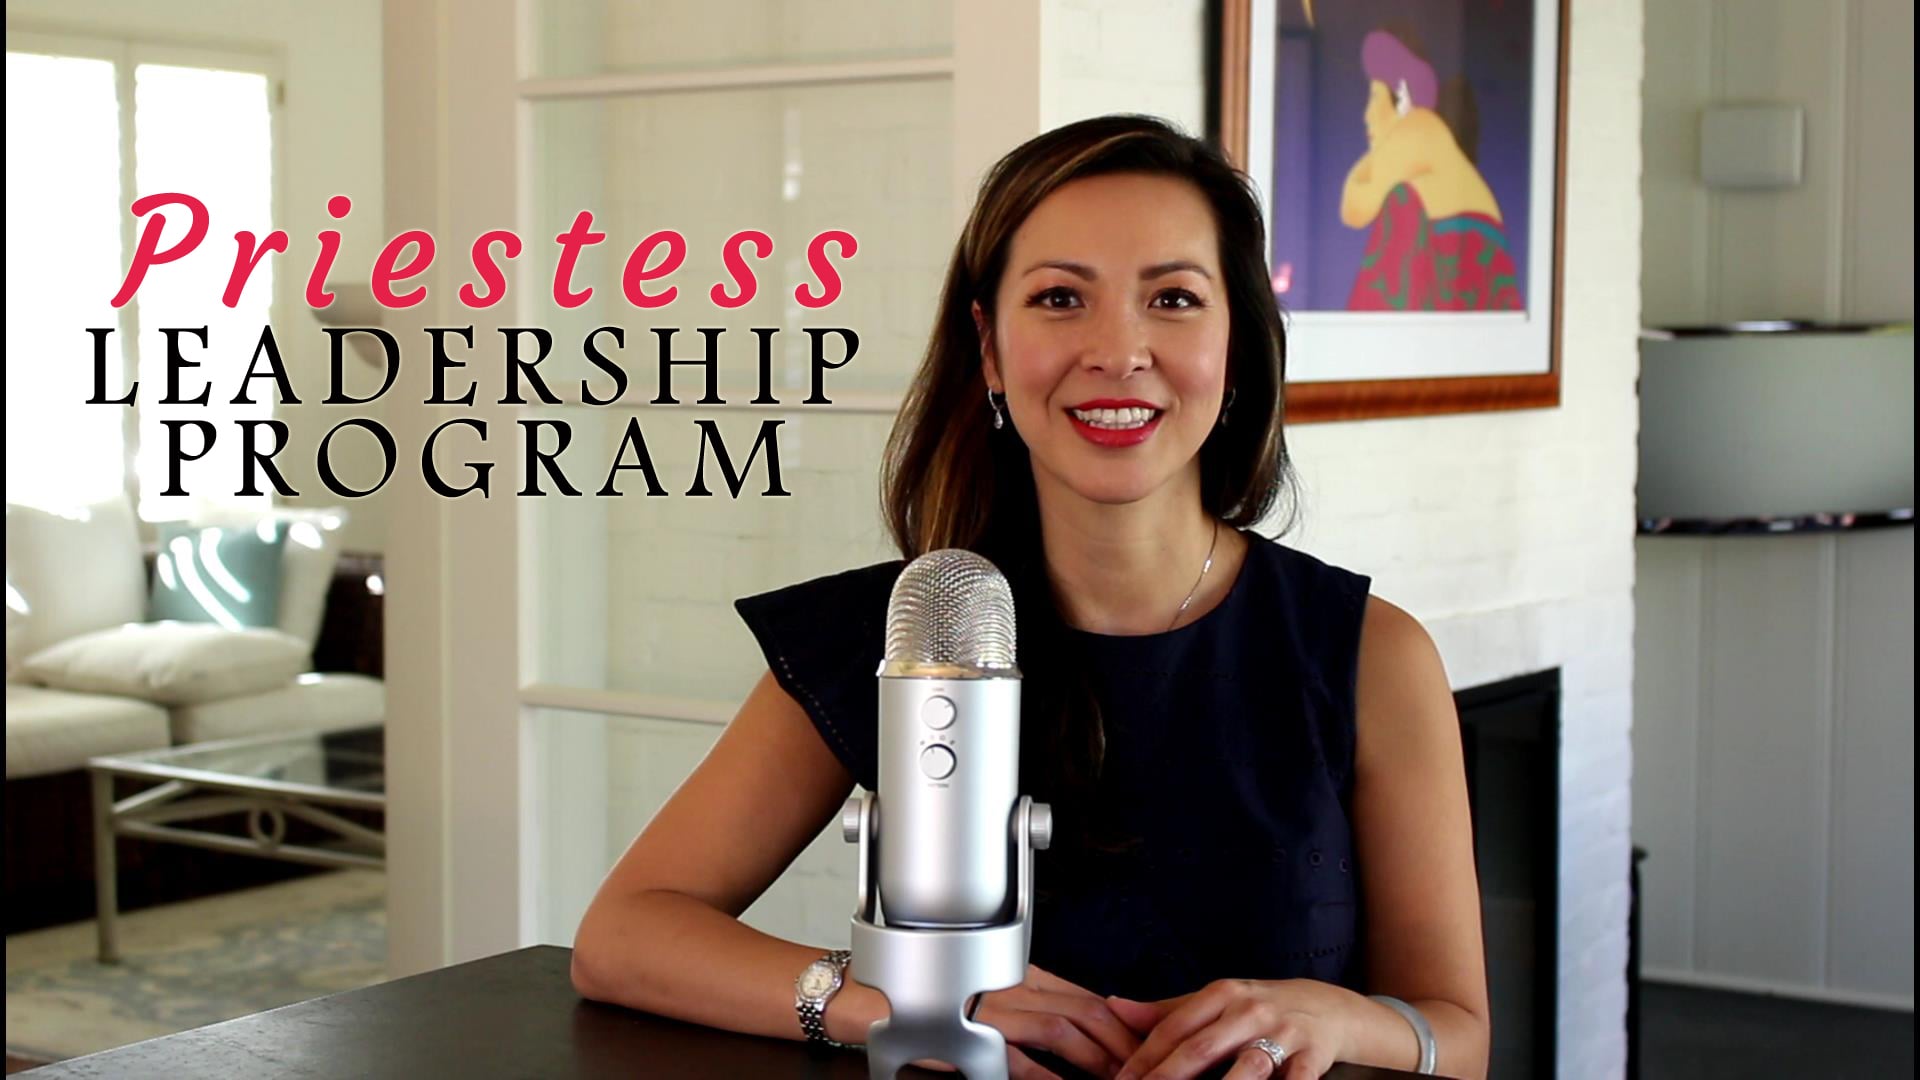 Priestess Leadership Program